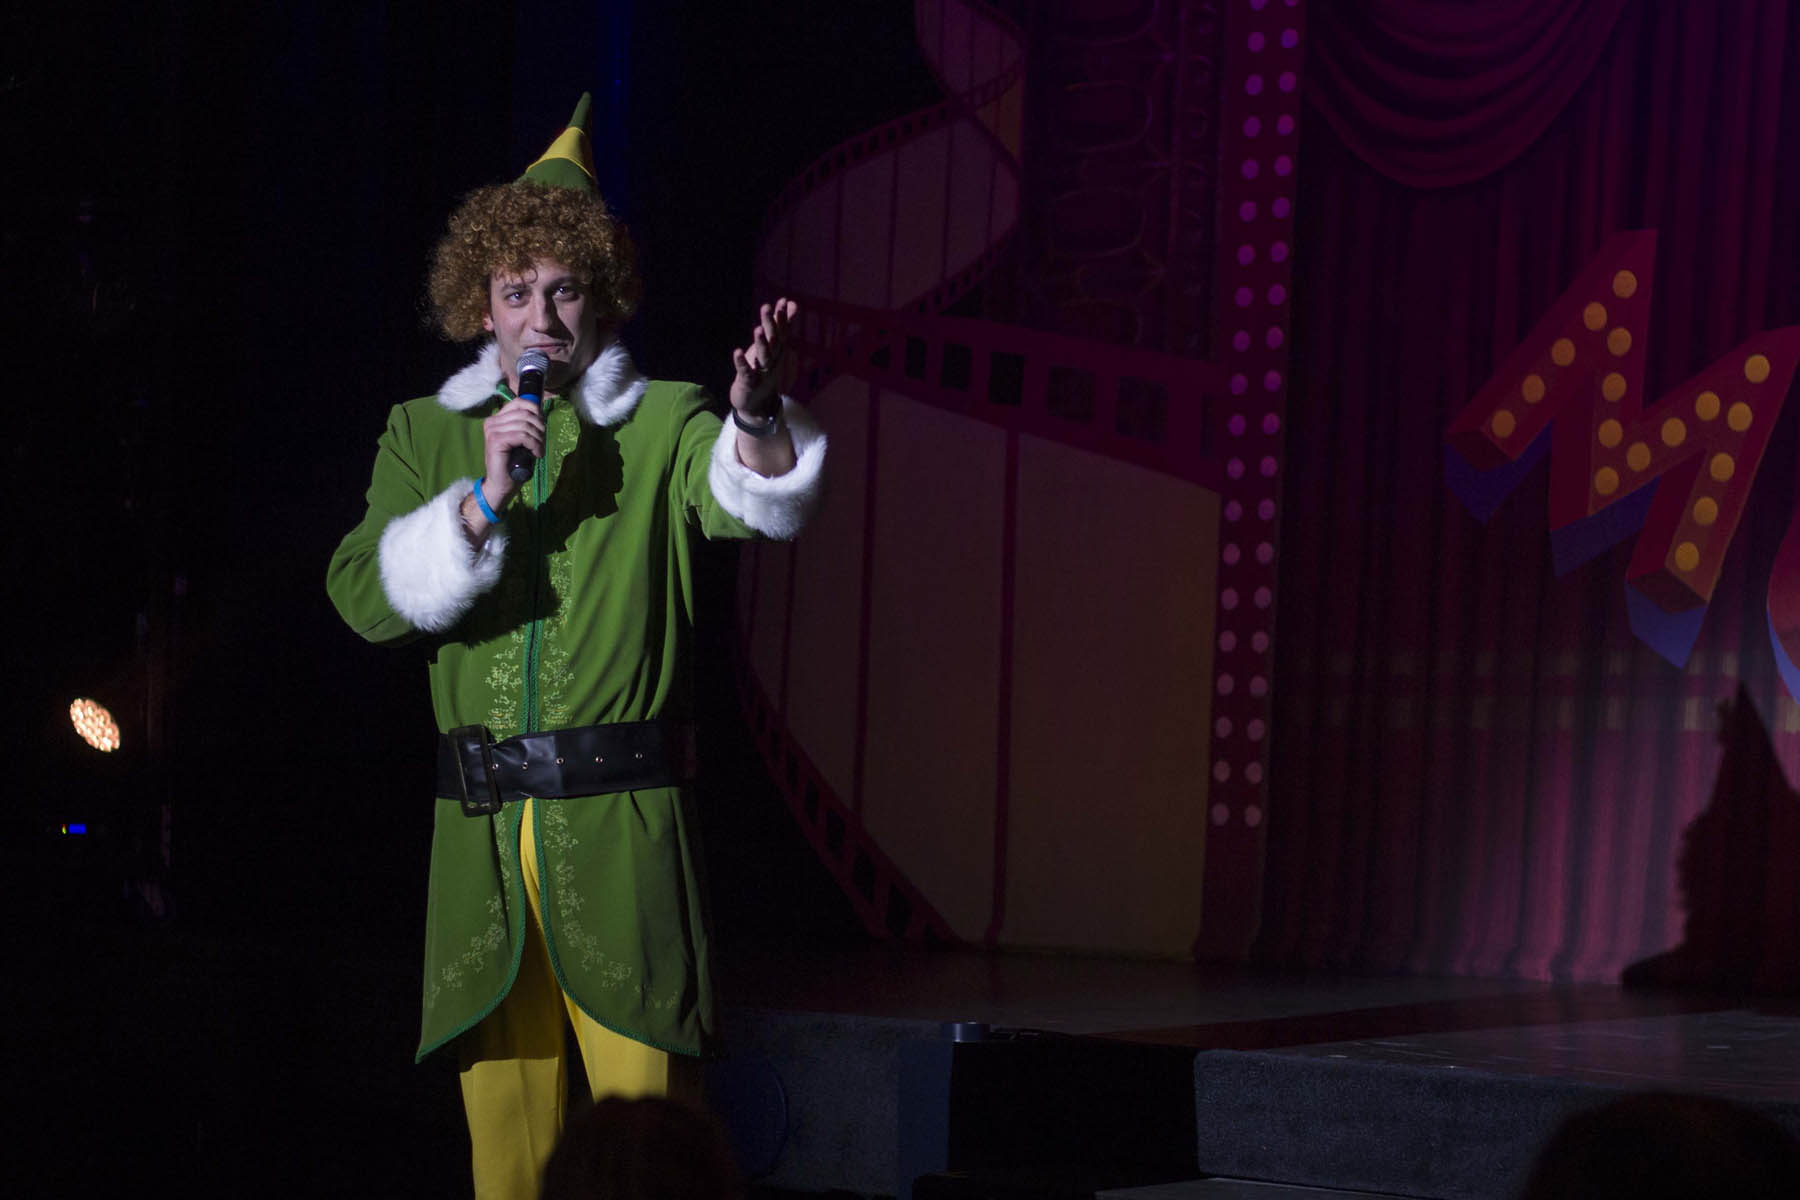 Man in elf costume singing.